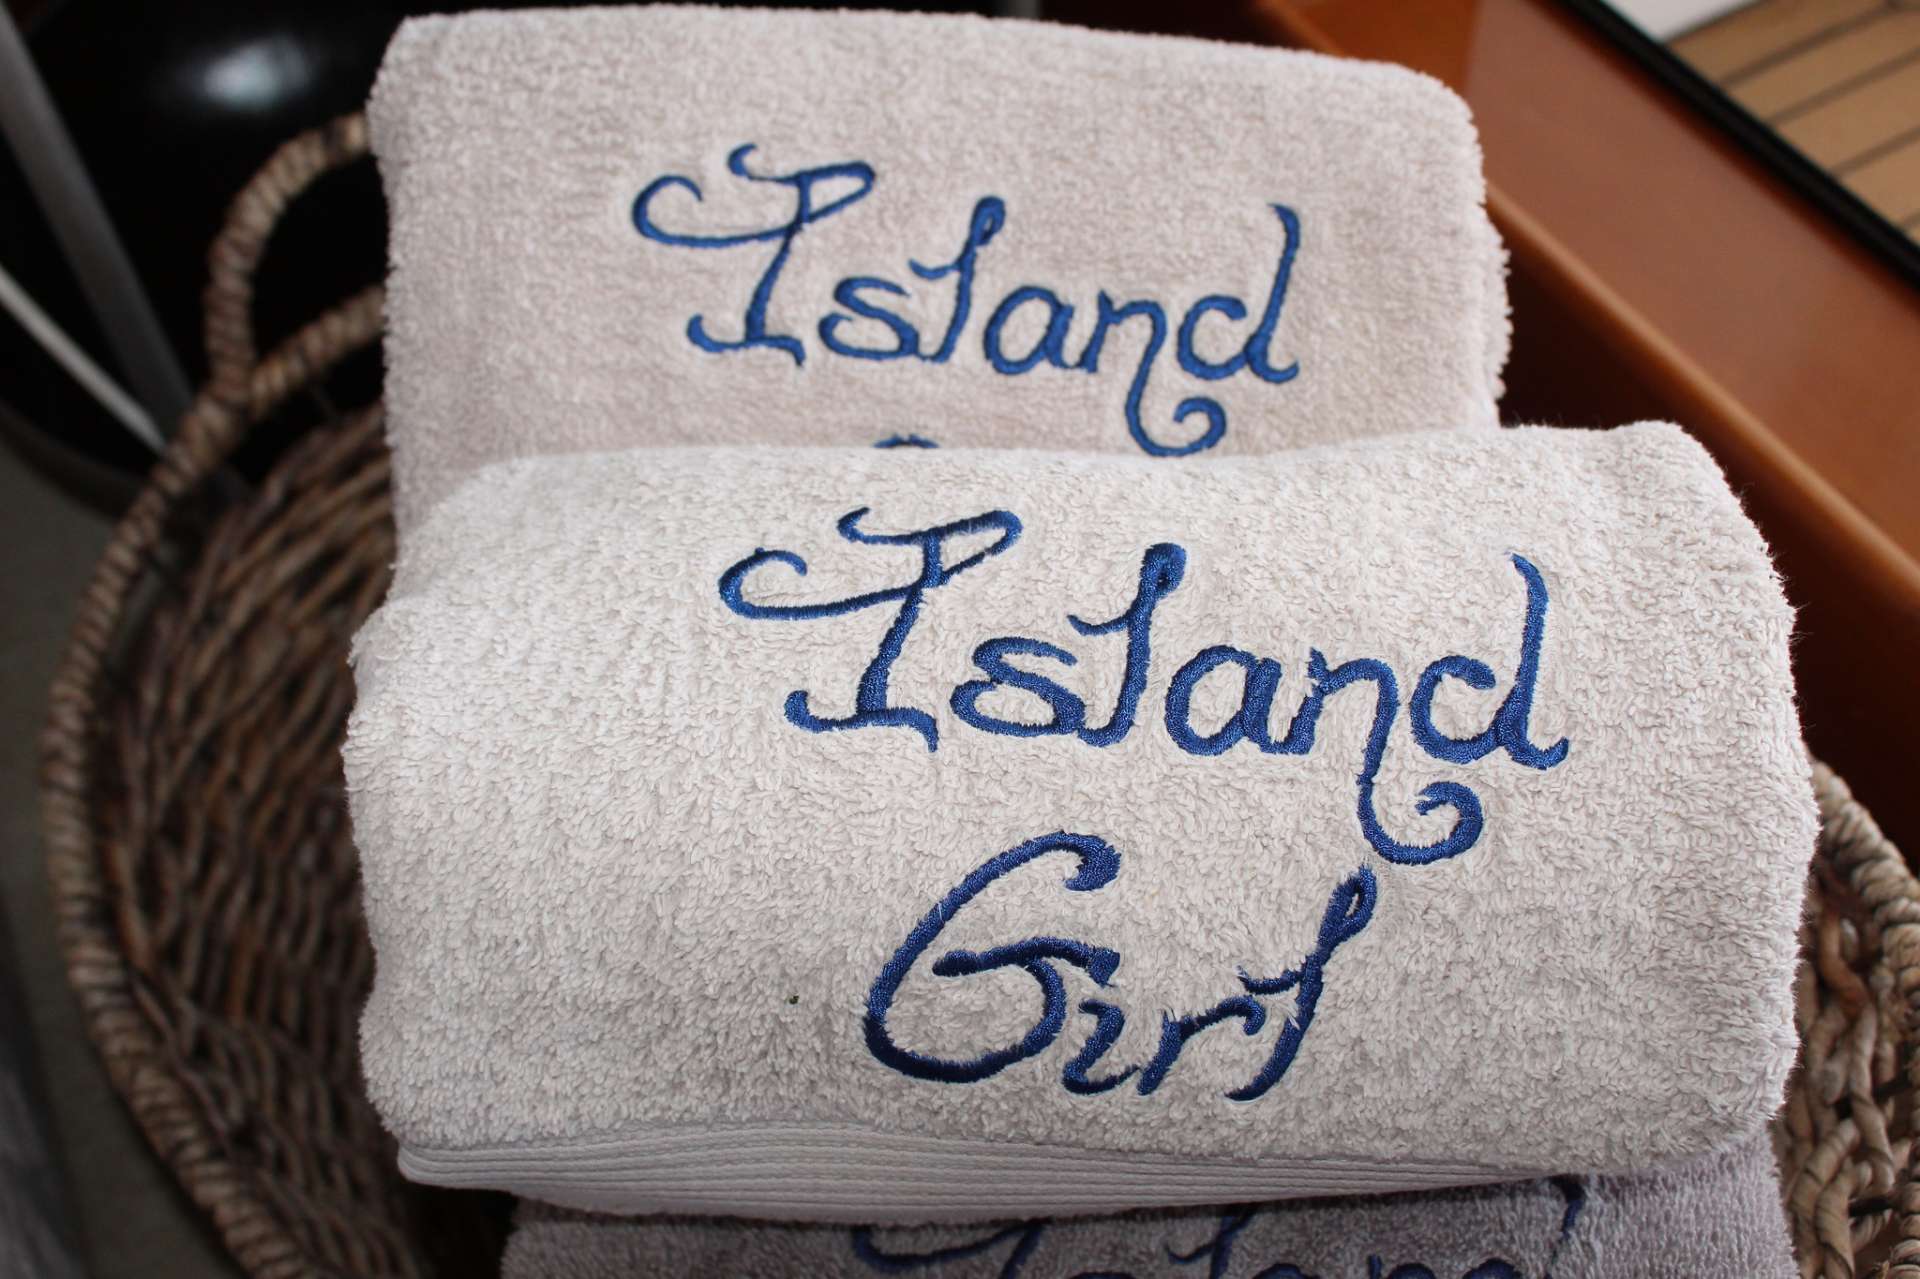 island girl